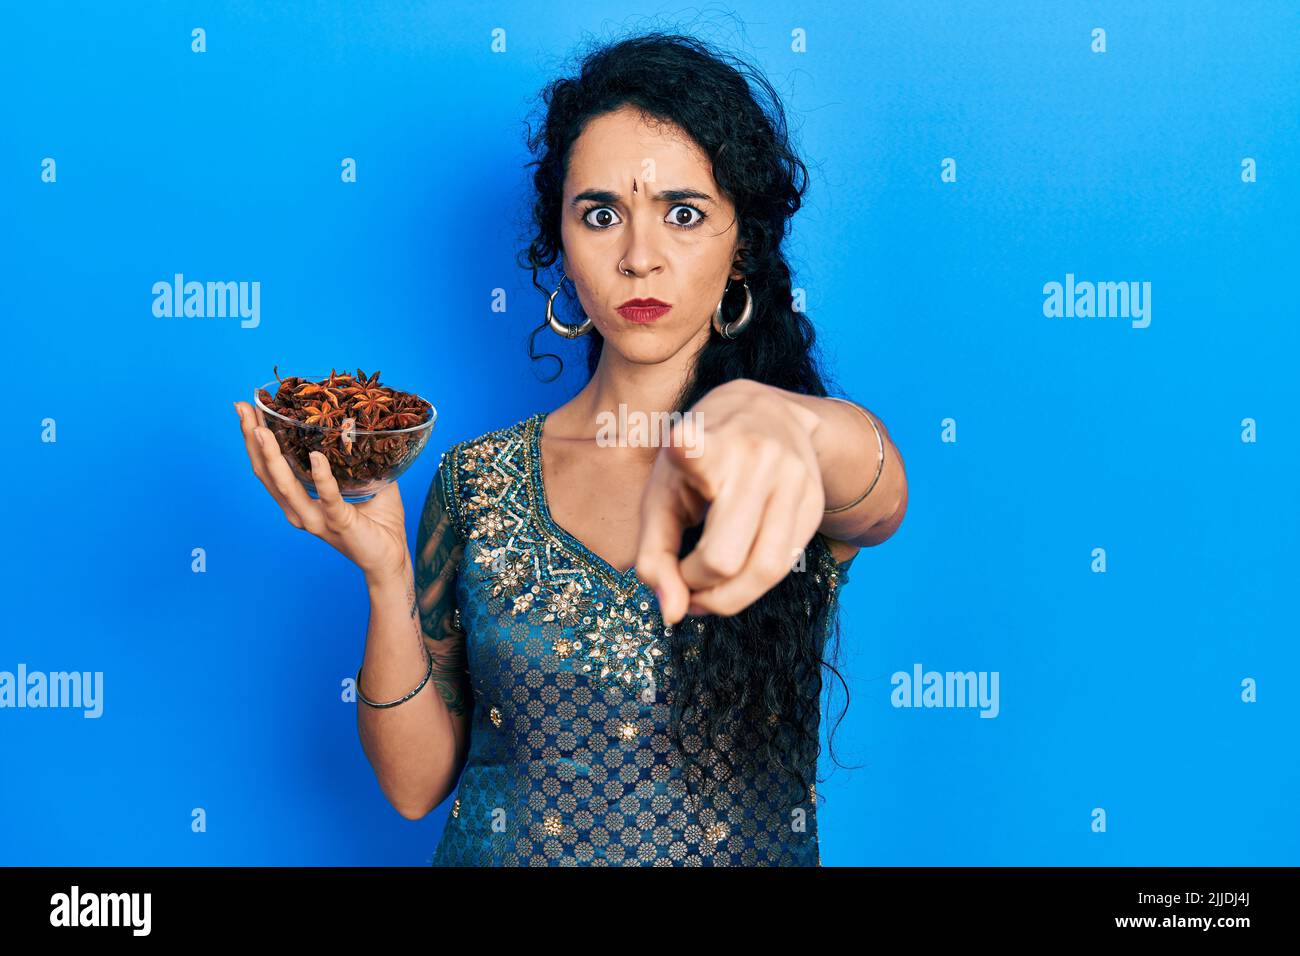 Junge Frau mit Bindi und traditionellem Kurta-Kleid, die eine Schale mit Sternanisanise hält und mit dem Finger auf die Kamera und auf Sie zeigt, selbstbewusster Gestenlook Stockfoto